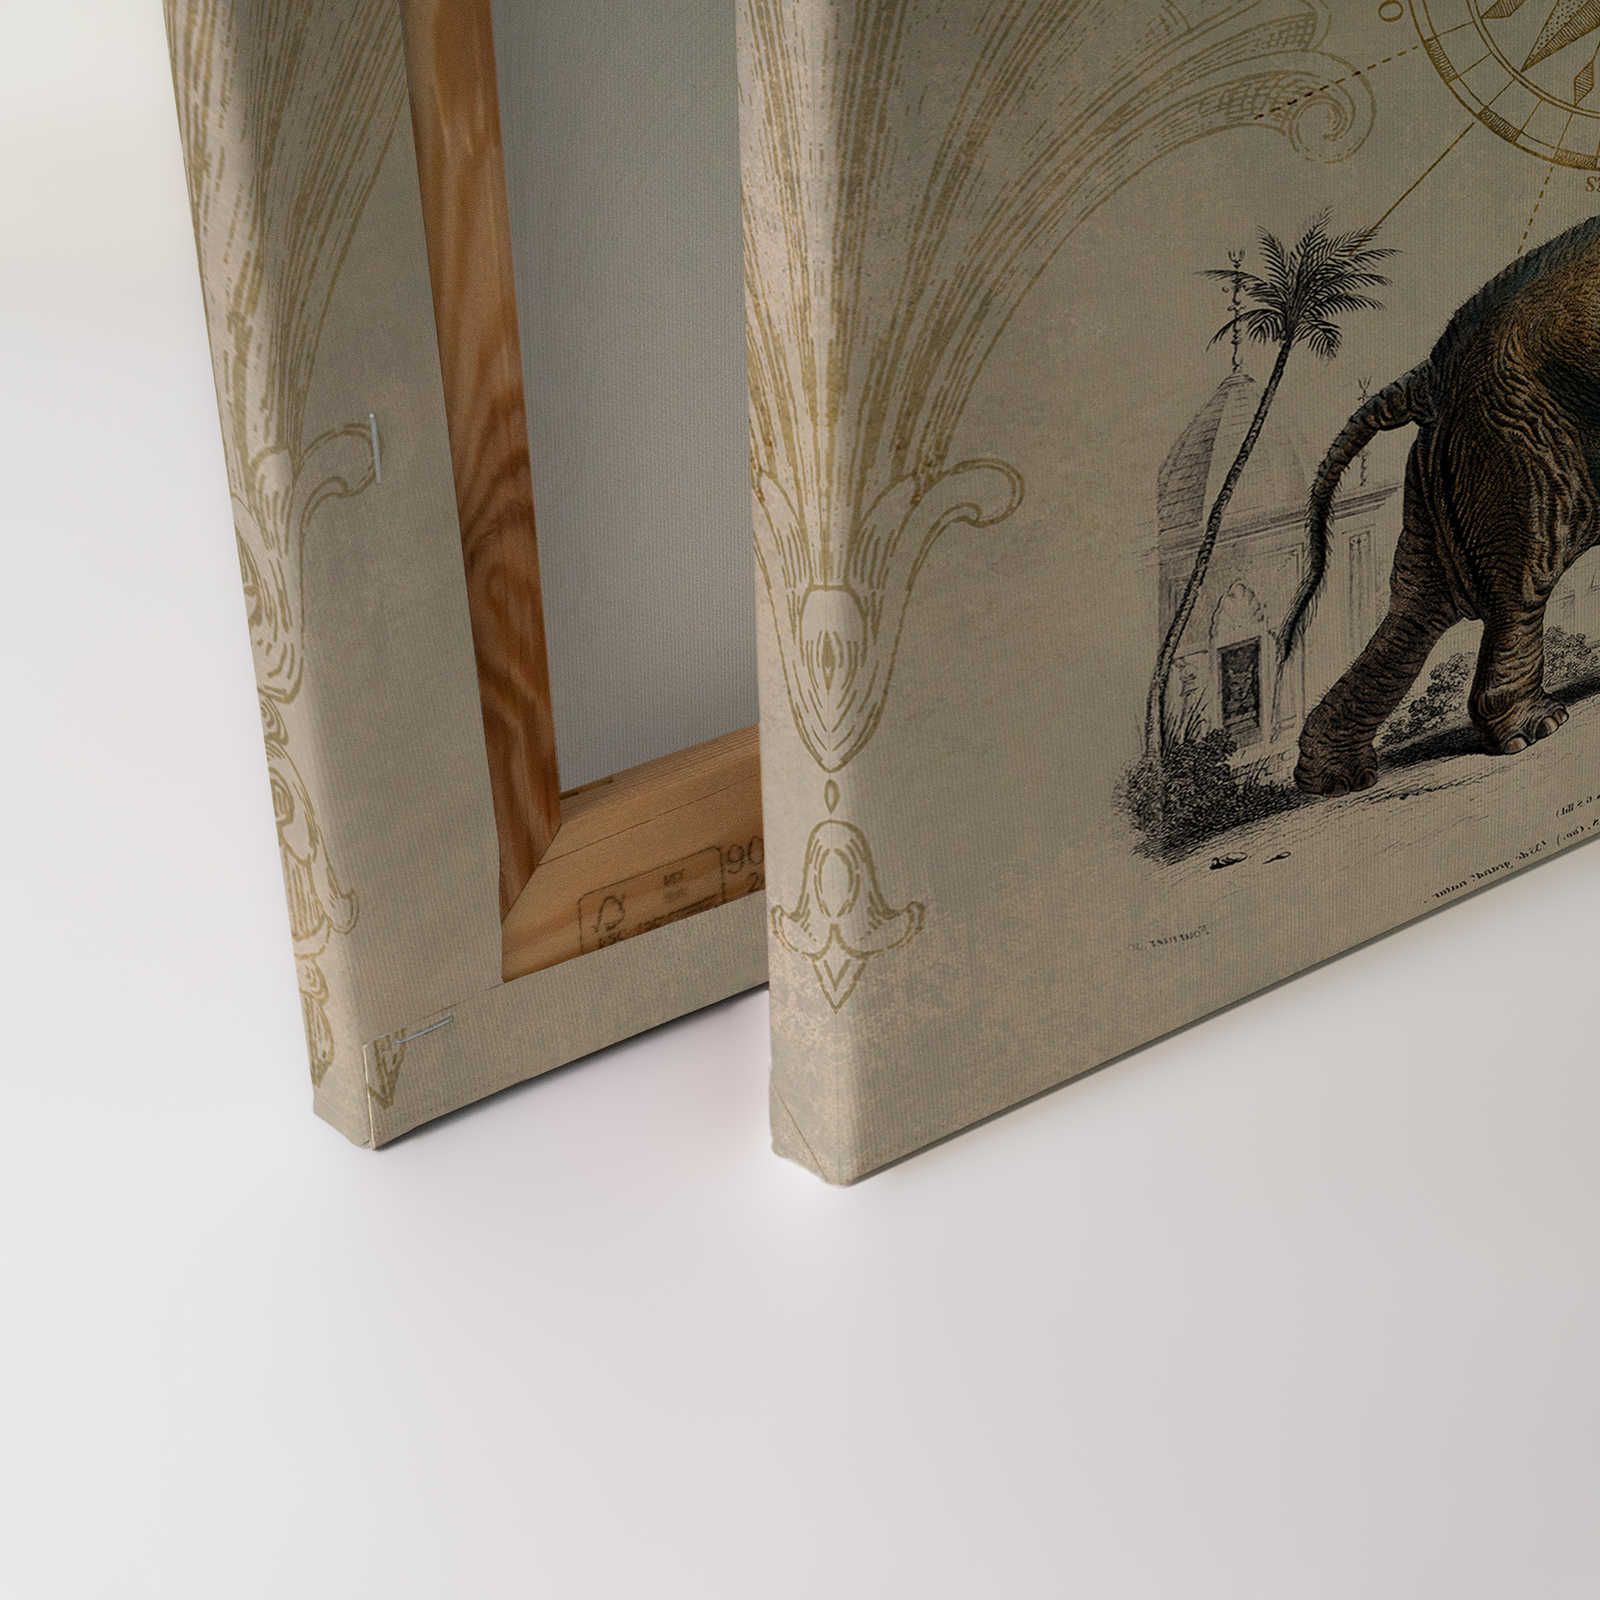             Toile nostalgique avec motif d'éléphant vintage - 0,90 m x 0,60 m
        